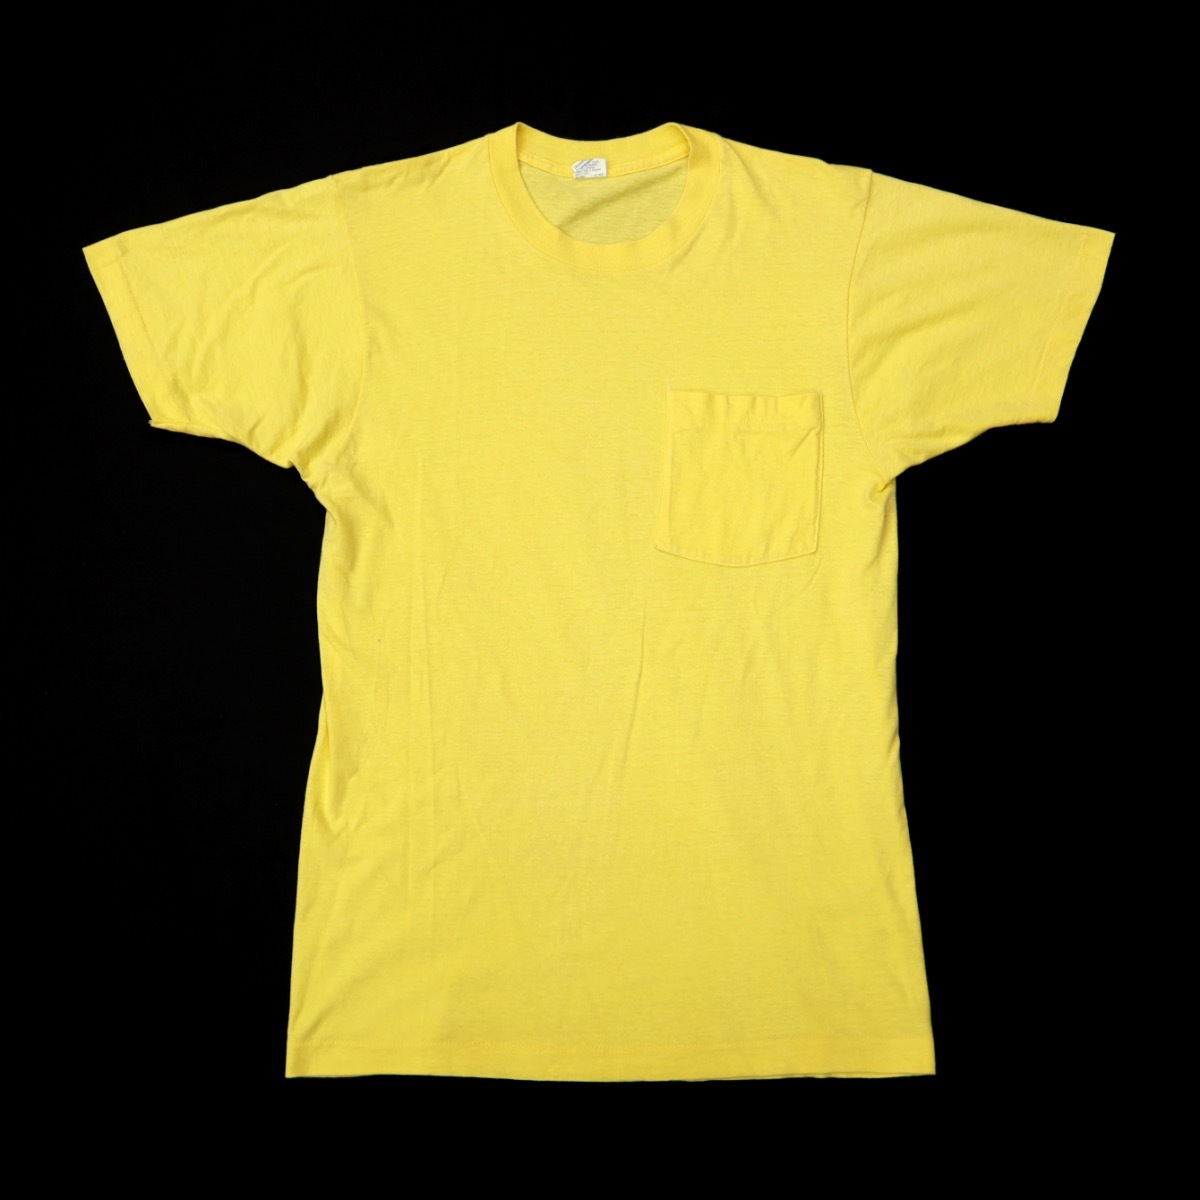 ☆送料無料 70s 80s ビンテージ BVD ビーブイディー 無地 ポケット Tシャツ USA製 ポケT 黄色 70年代 80年代 古着 ワーク プレーン メンズ_画像1